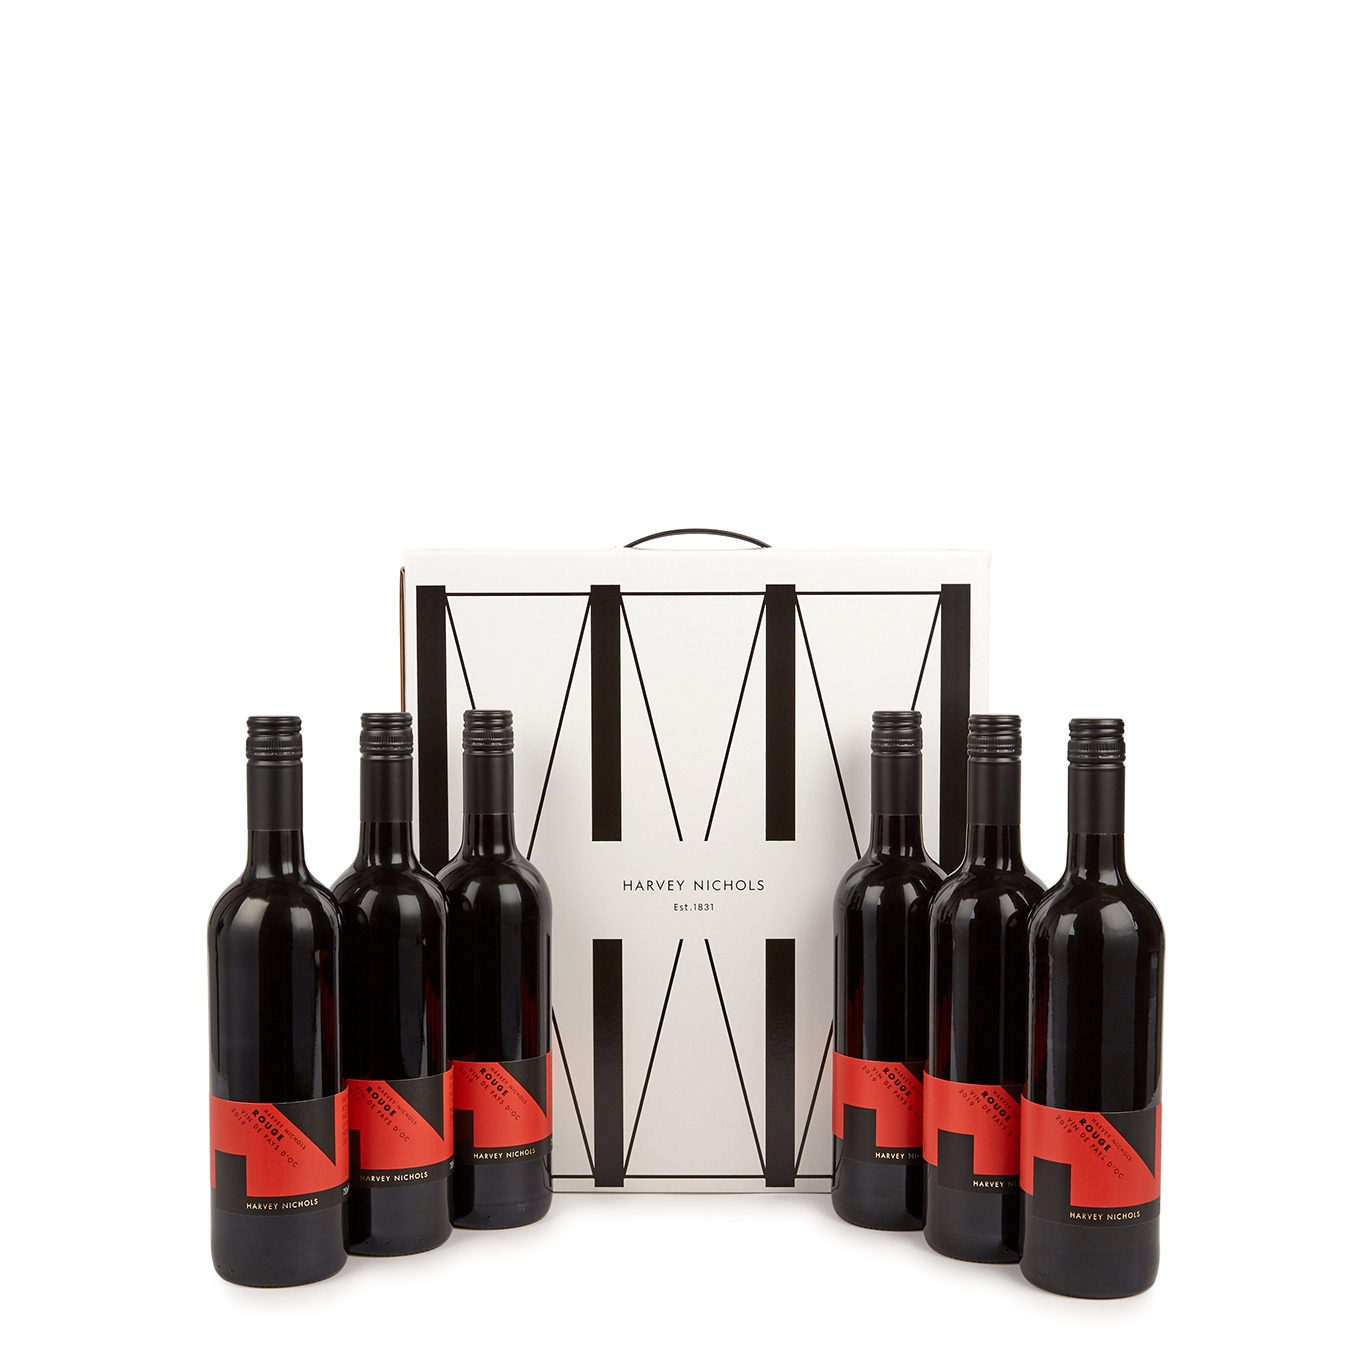 Harvey Nichols Rouge Vin De Pays D'Oc - Case Of Six Red Wine